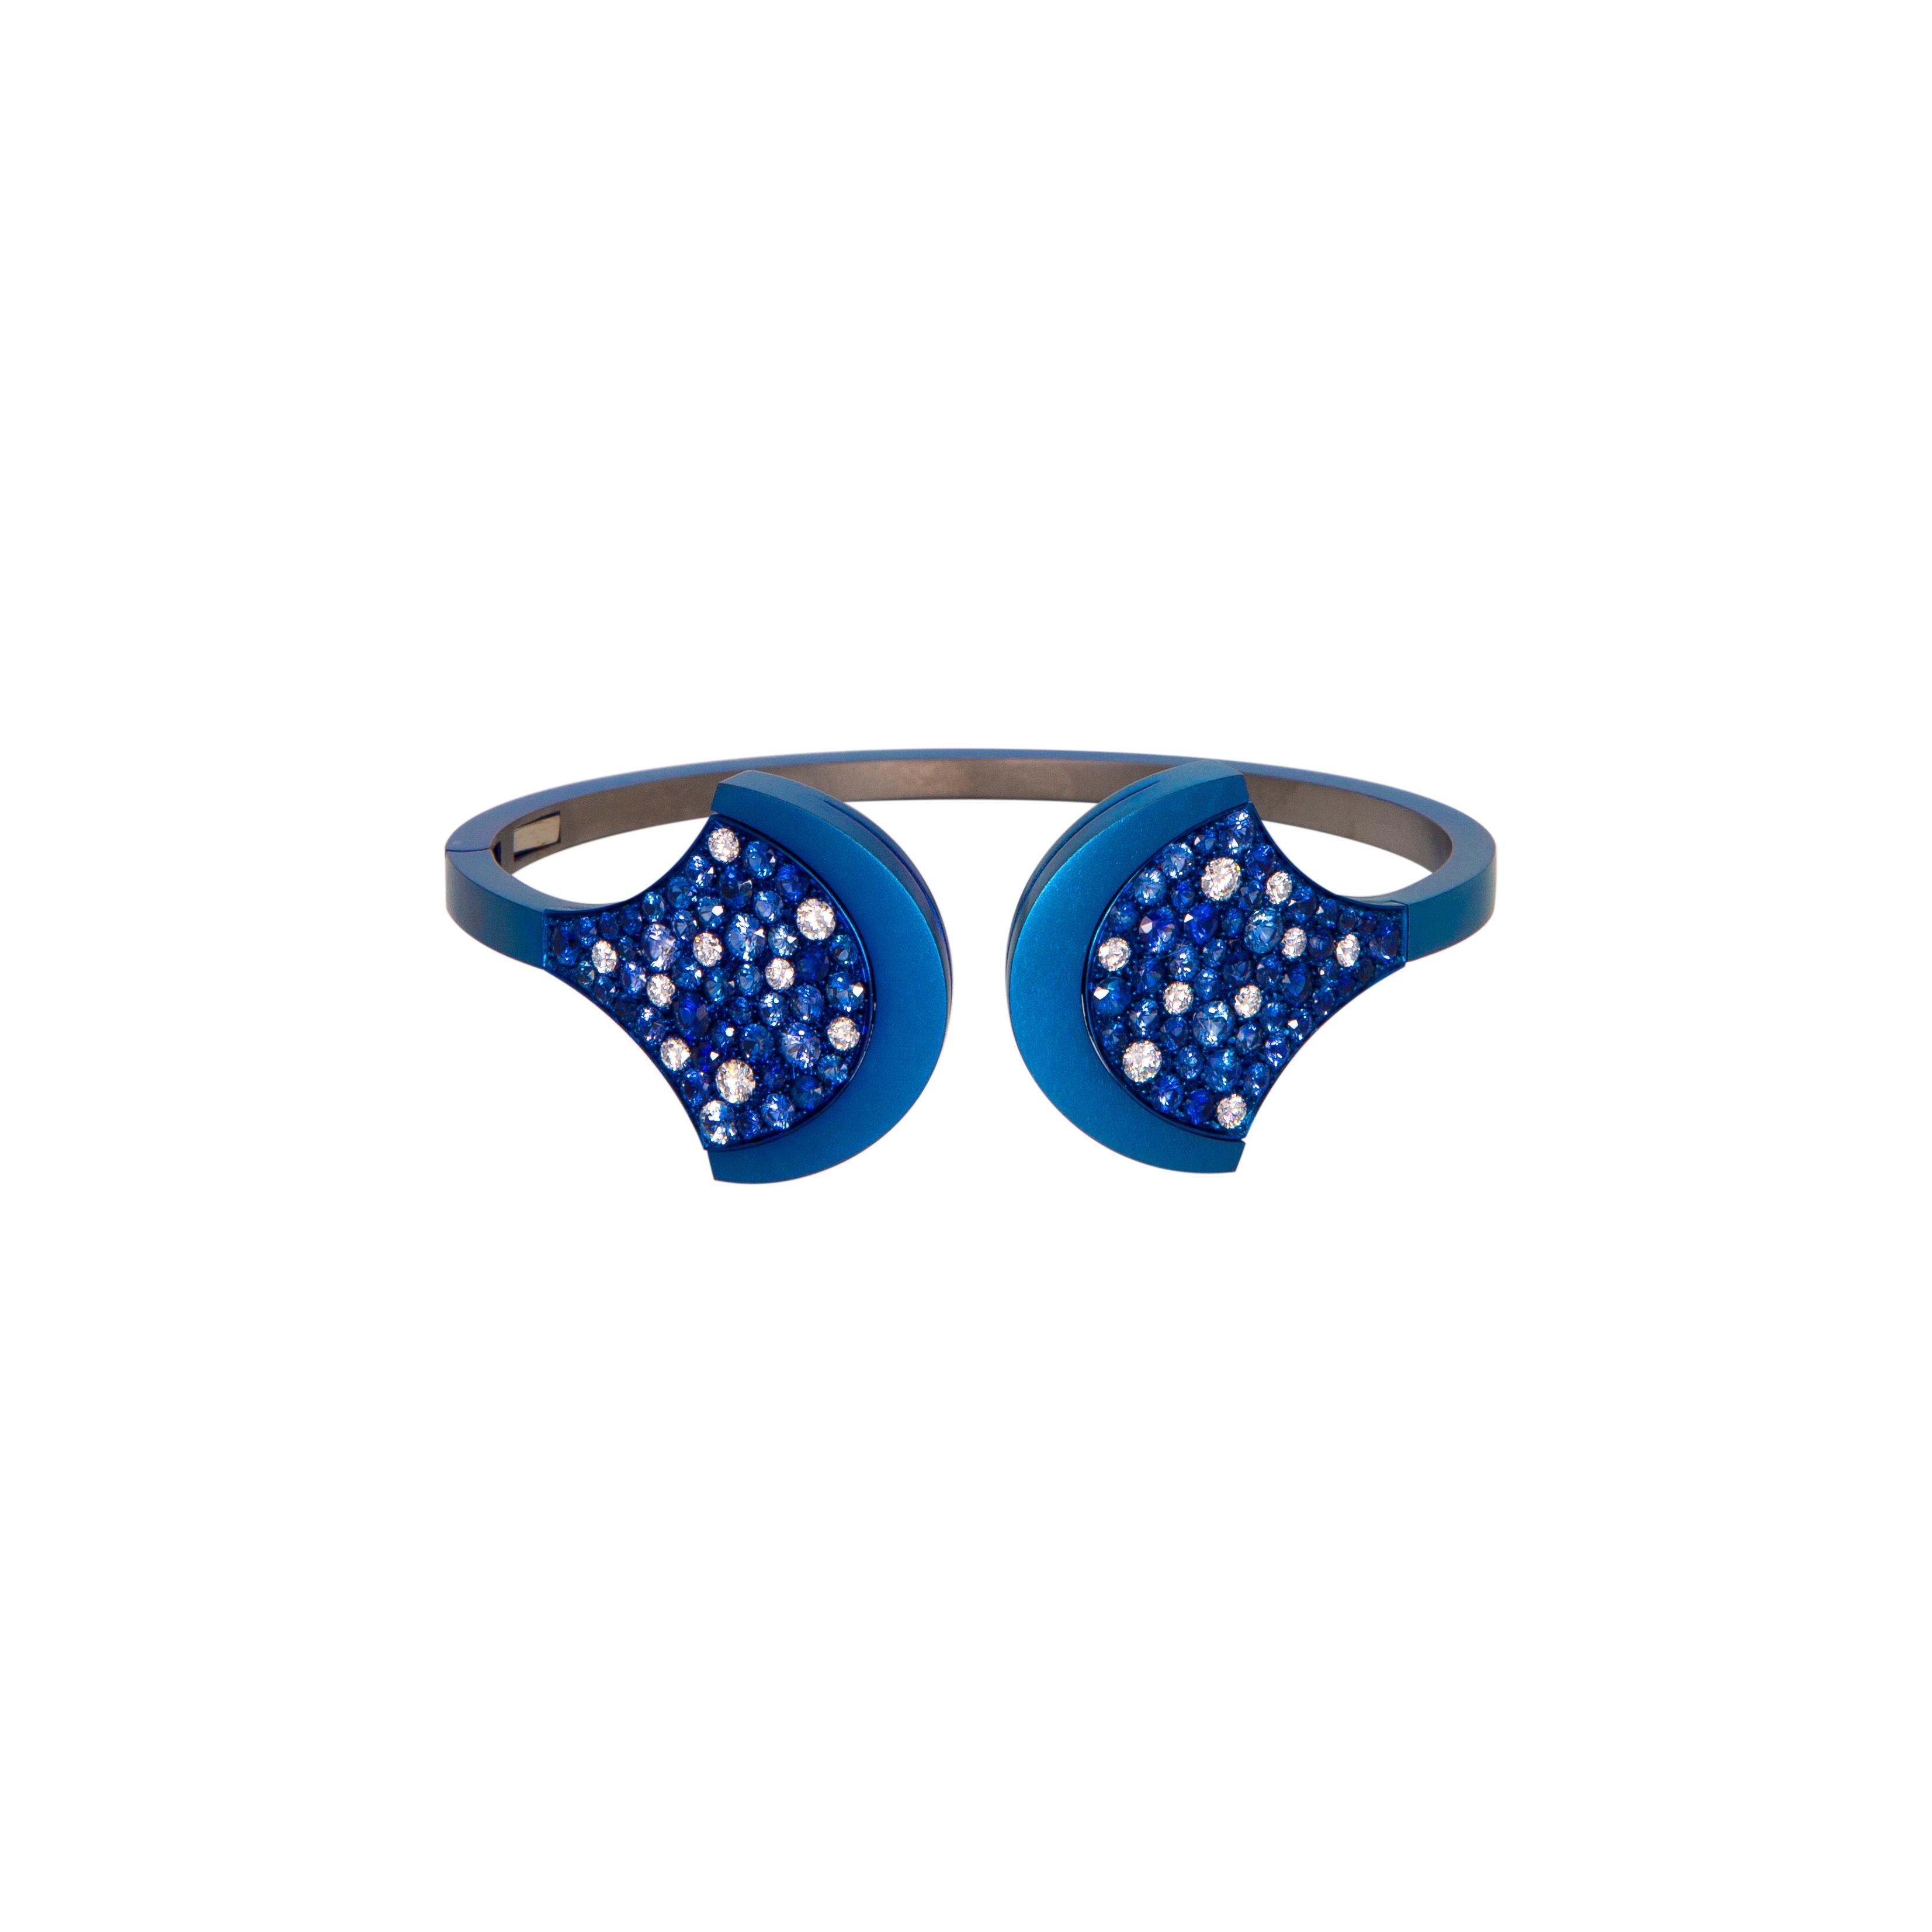 Armreif aus blauem Titatium mit Diamanten und blauem Saphir.
Ein luxuriöses Juwel für Ihre eigene Sammlung.
Einzigartiger Armreif aus Titanium Extra Light mit Diamanten ct. 0,75 (n.18 Steine) und blauem Saphir ct. 4,56 (n.86 Steine). Titan wiegt